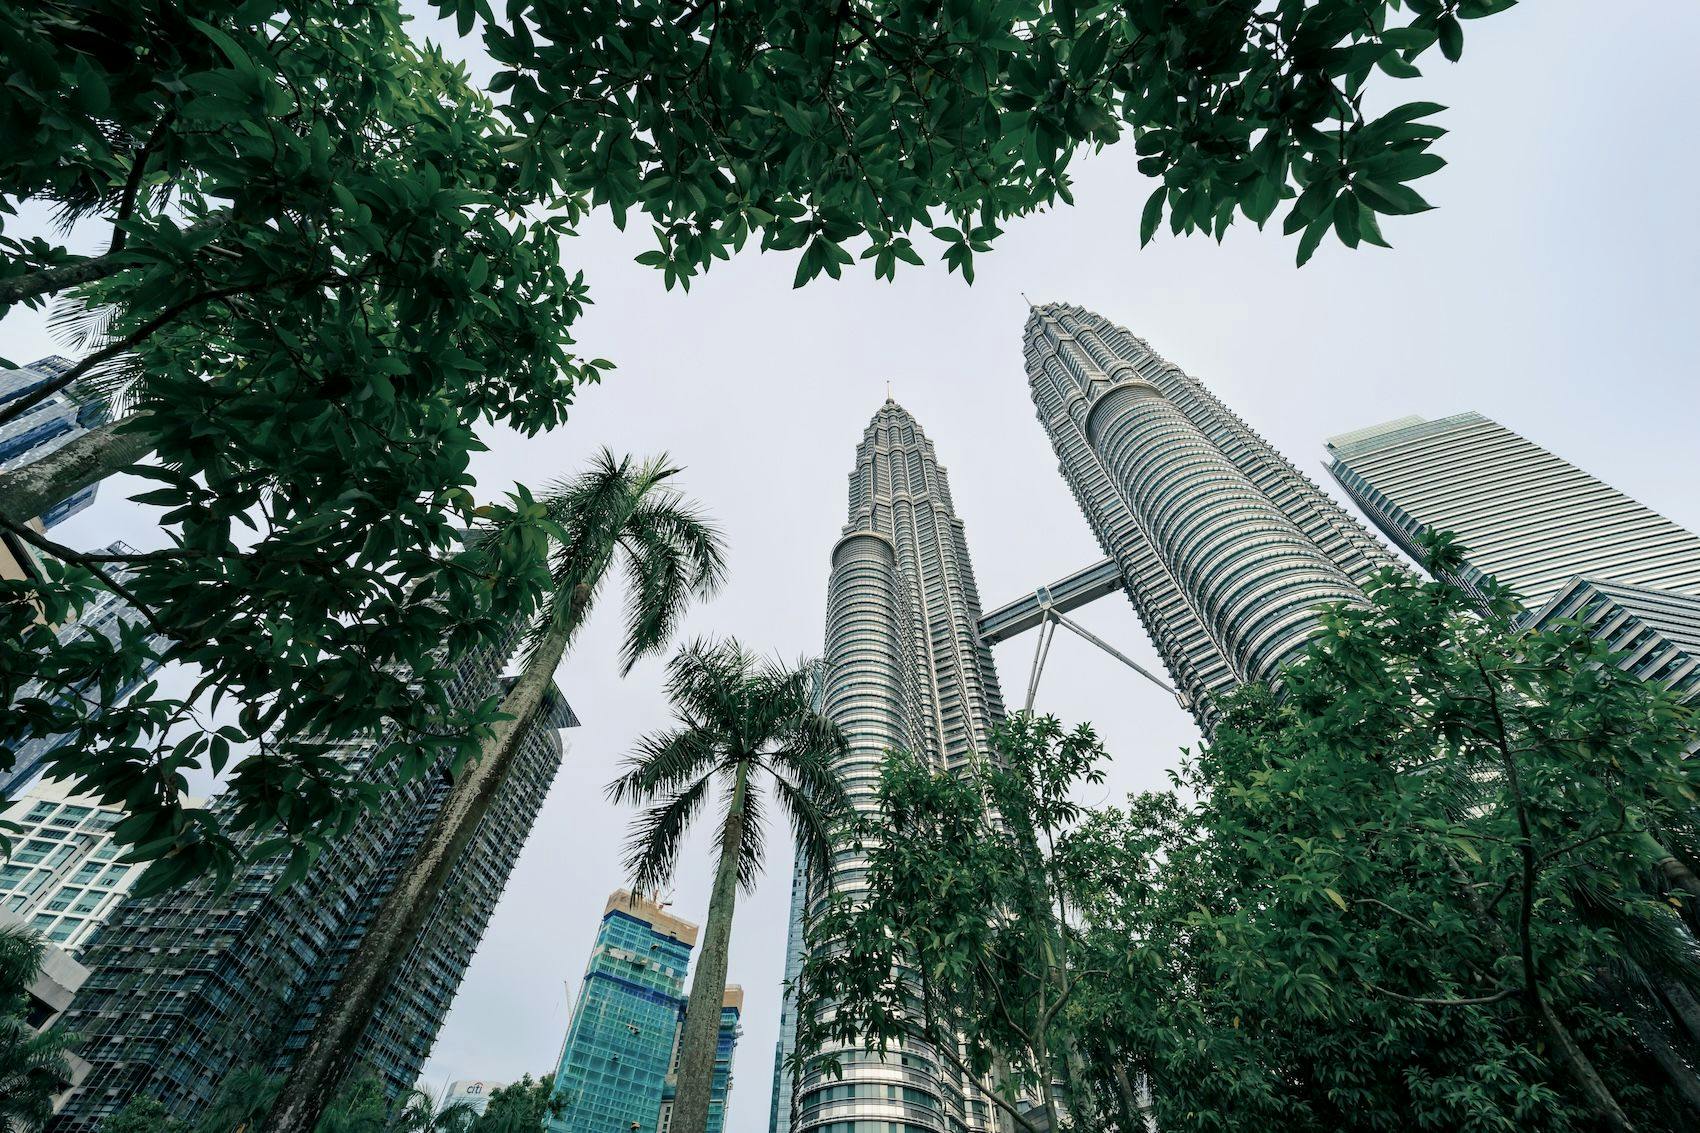 Petronas Twin Towers oder KLCC Twin Towers, 88-stöckige Wolkenkratzer in Kuala Lumpur, ein wichtiges Wahrzeichen der Stadt, Touristenziel.